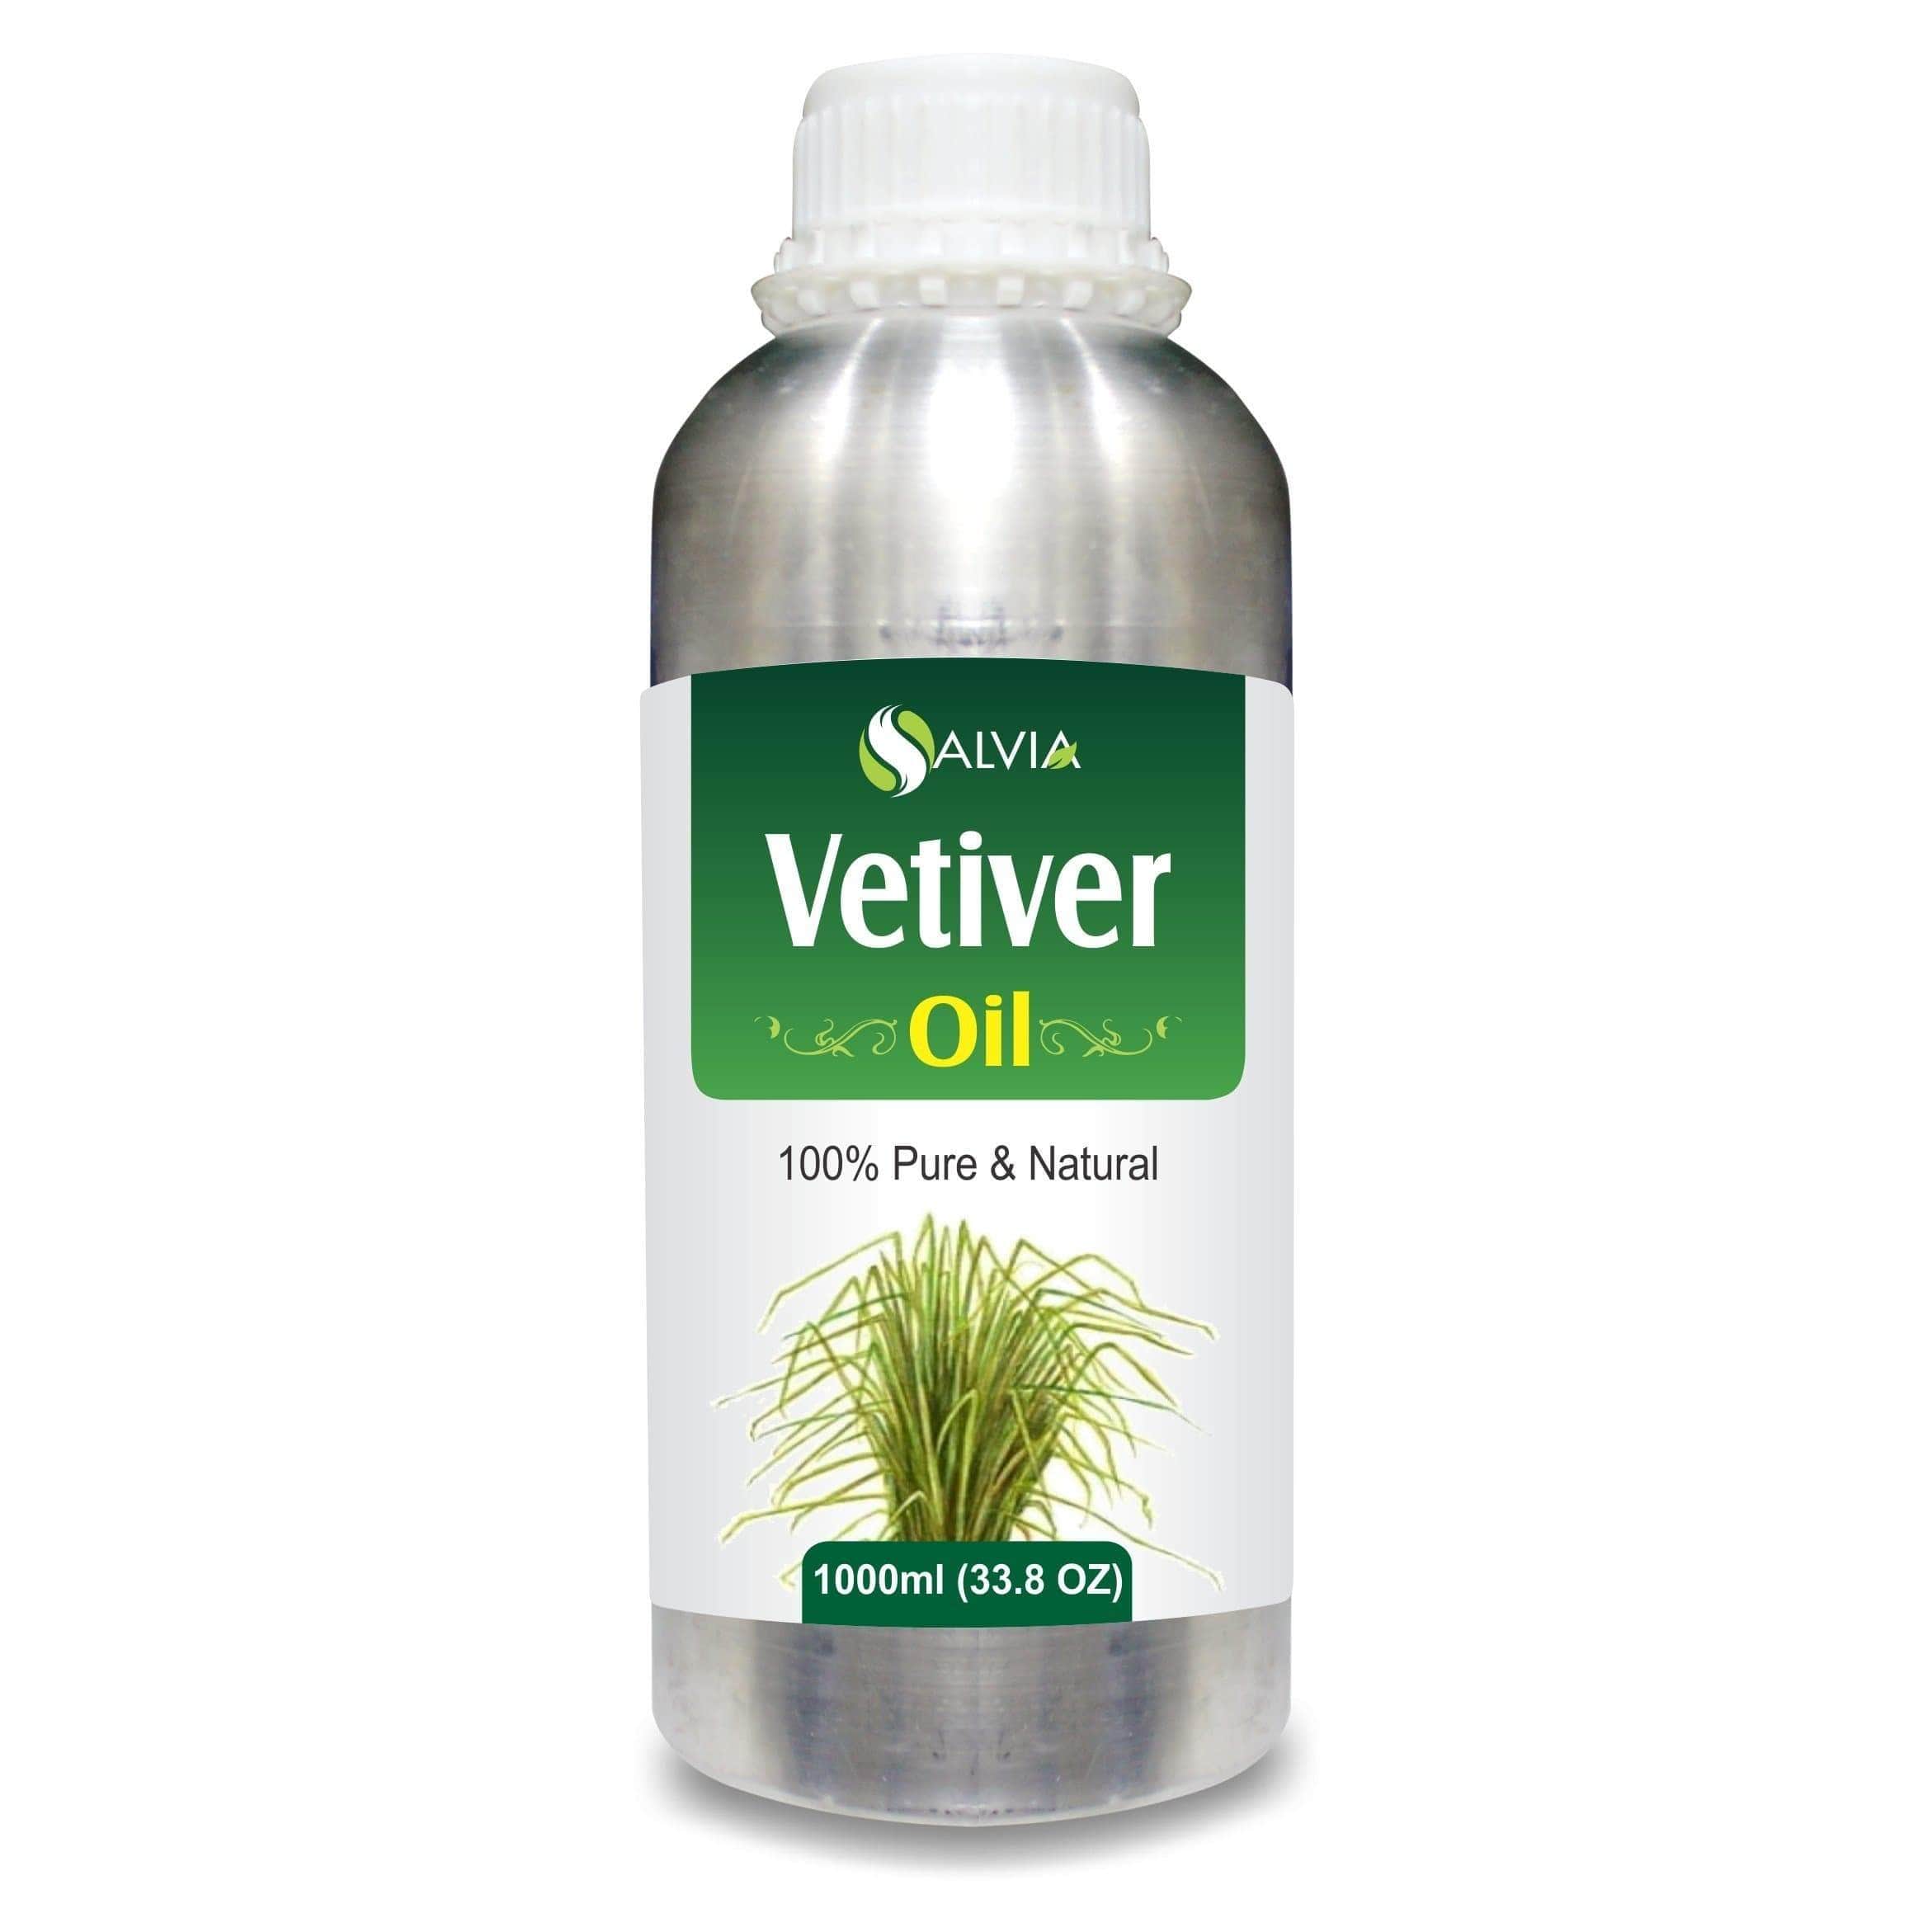 Vetiver oil benefits for skin